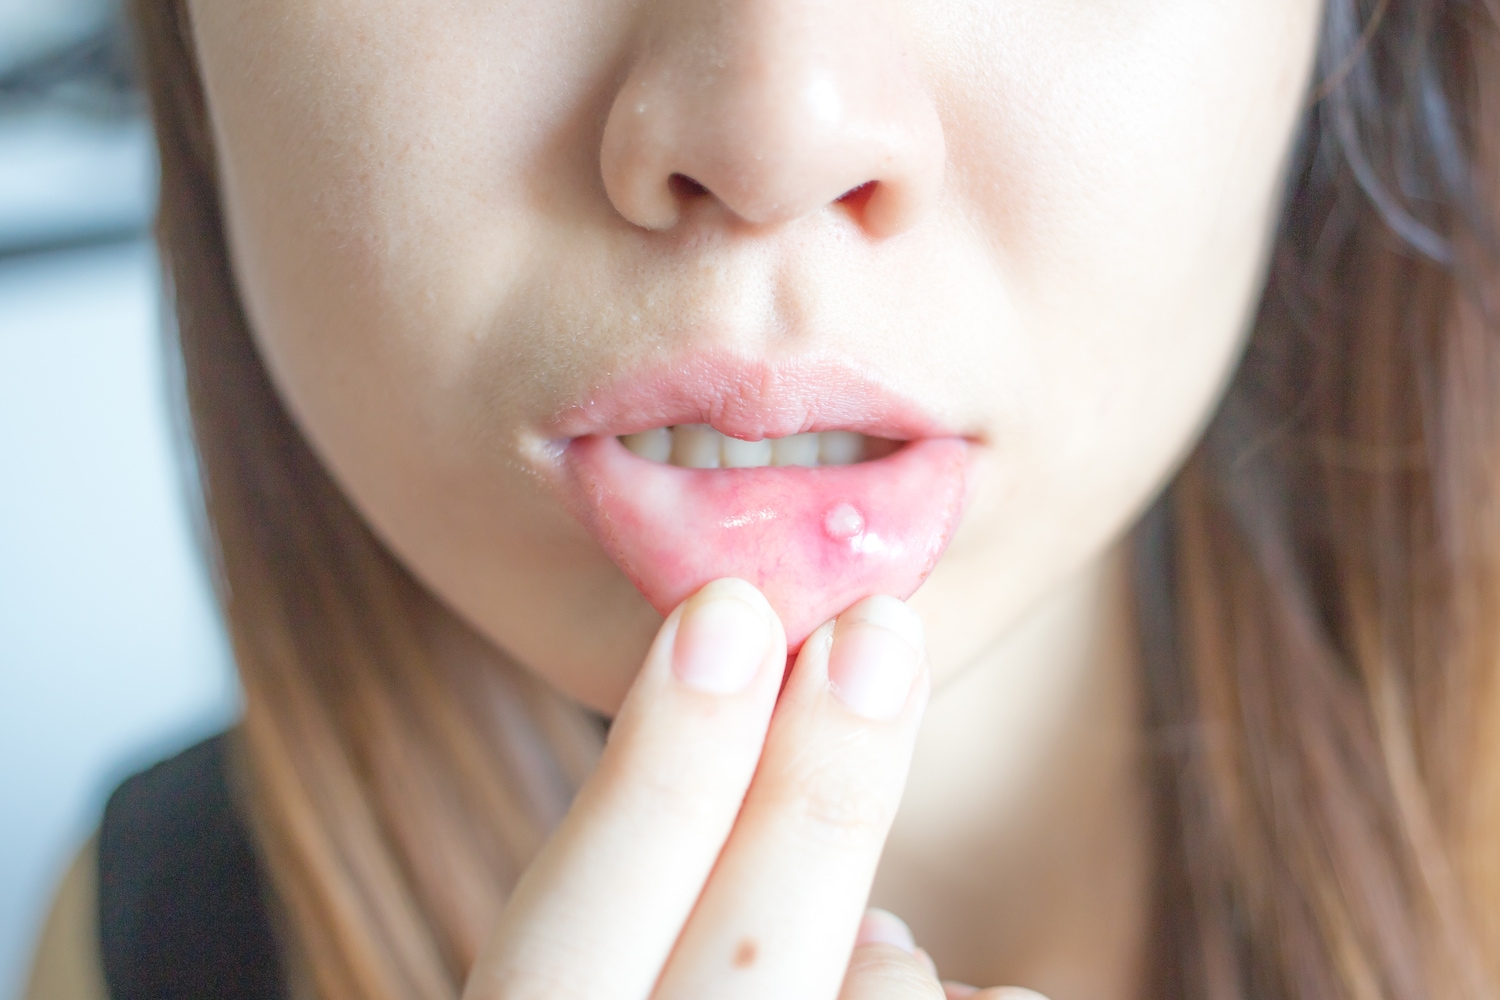 口腔溃疡和唇疱疹